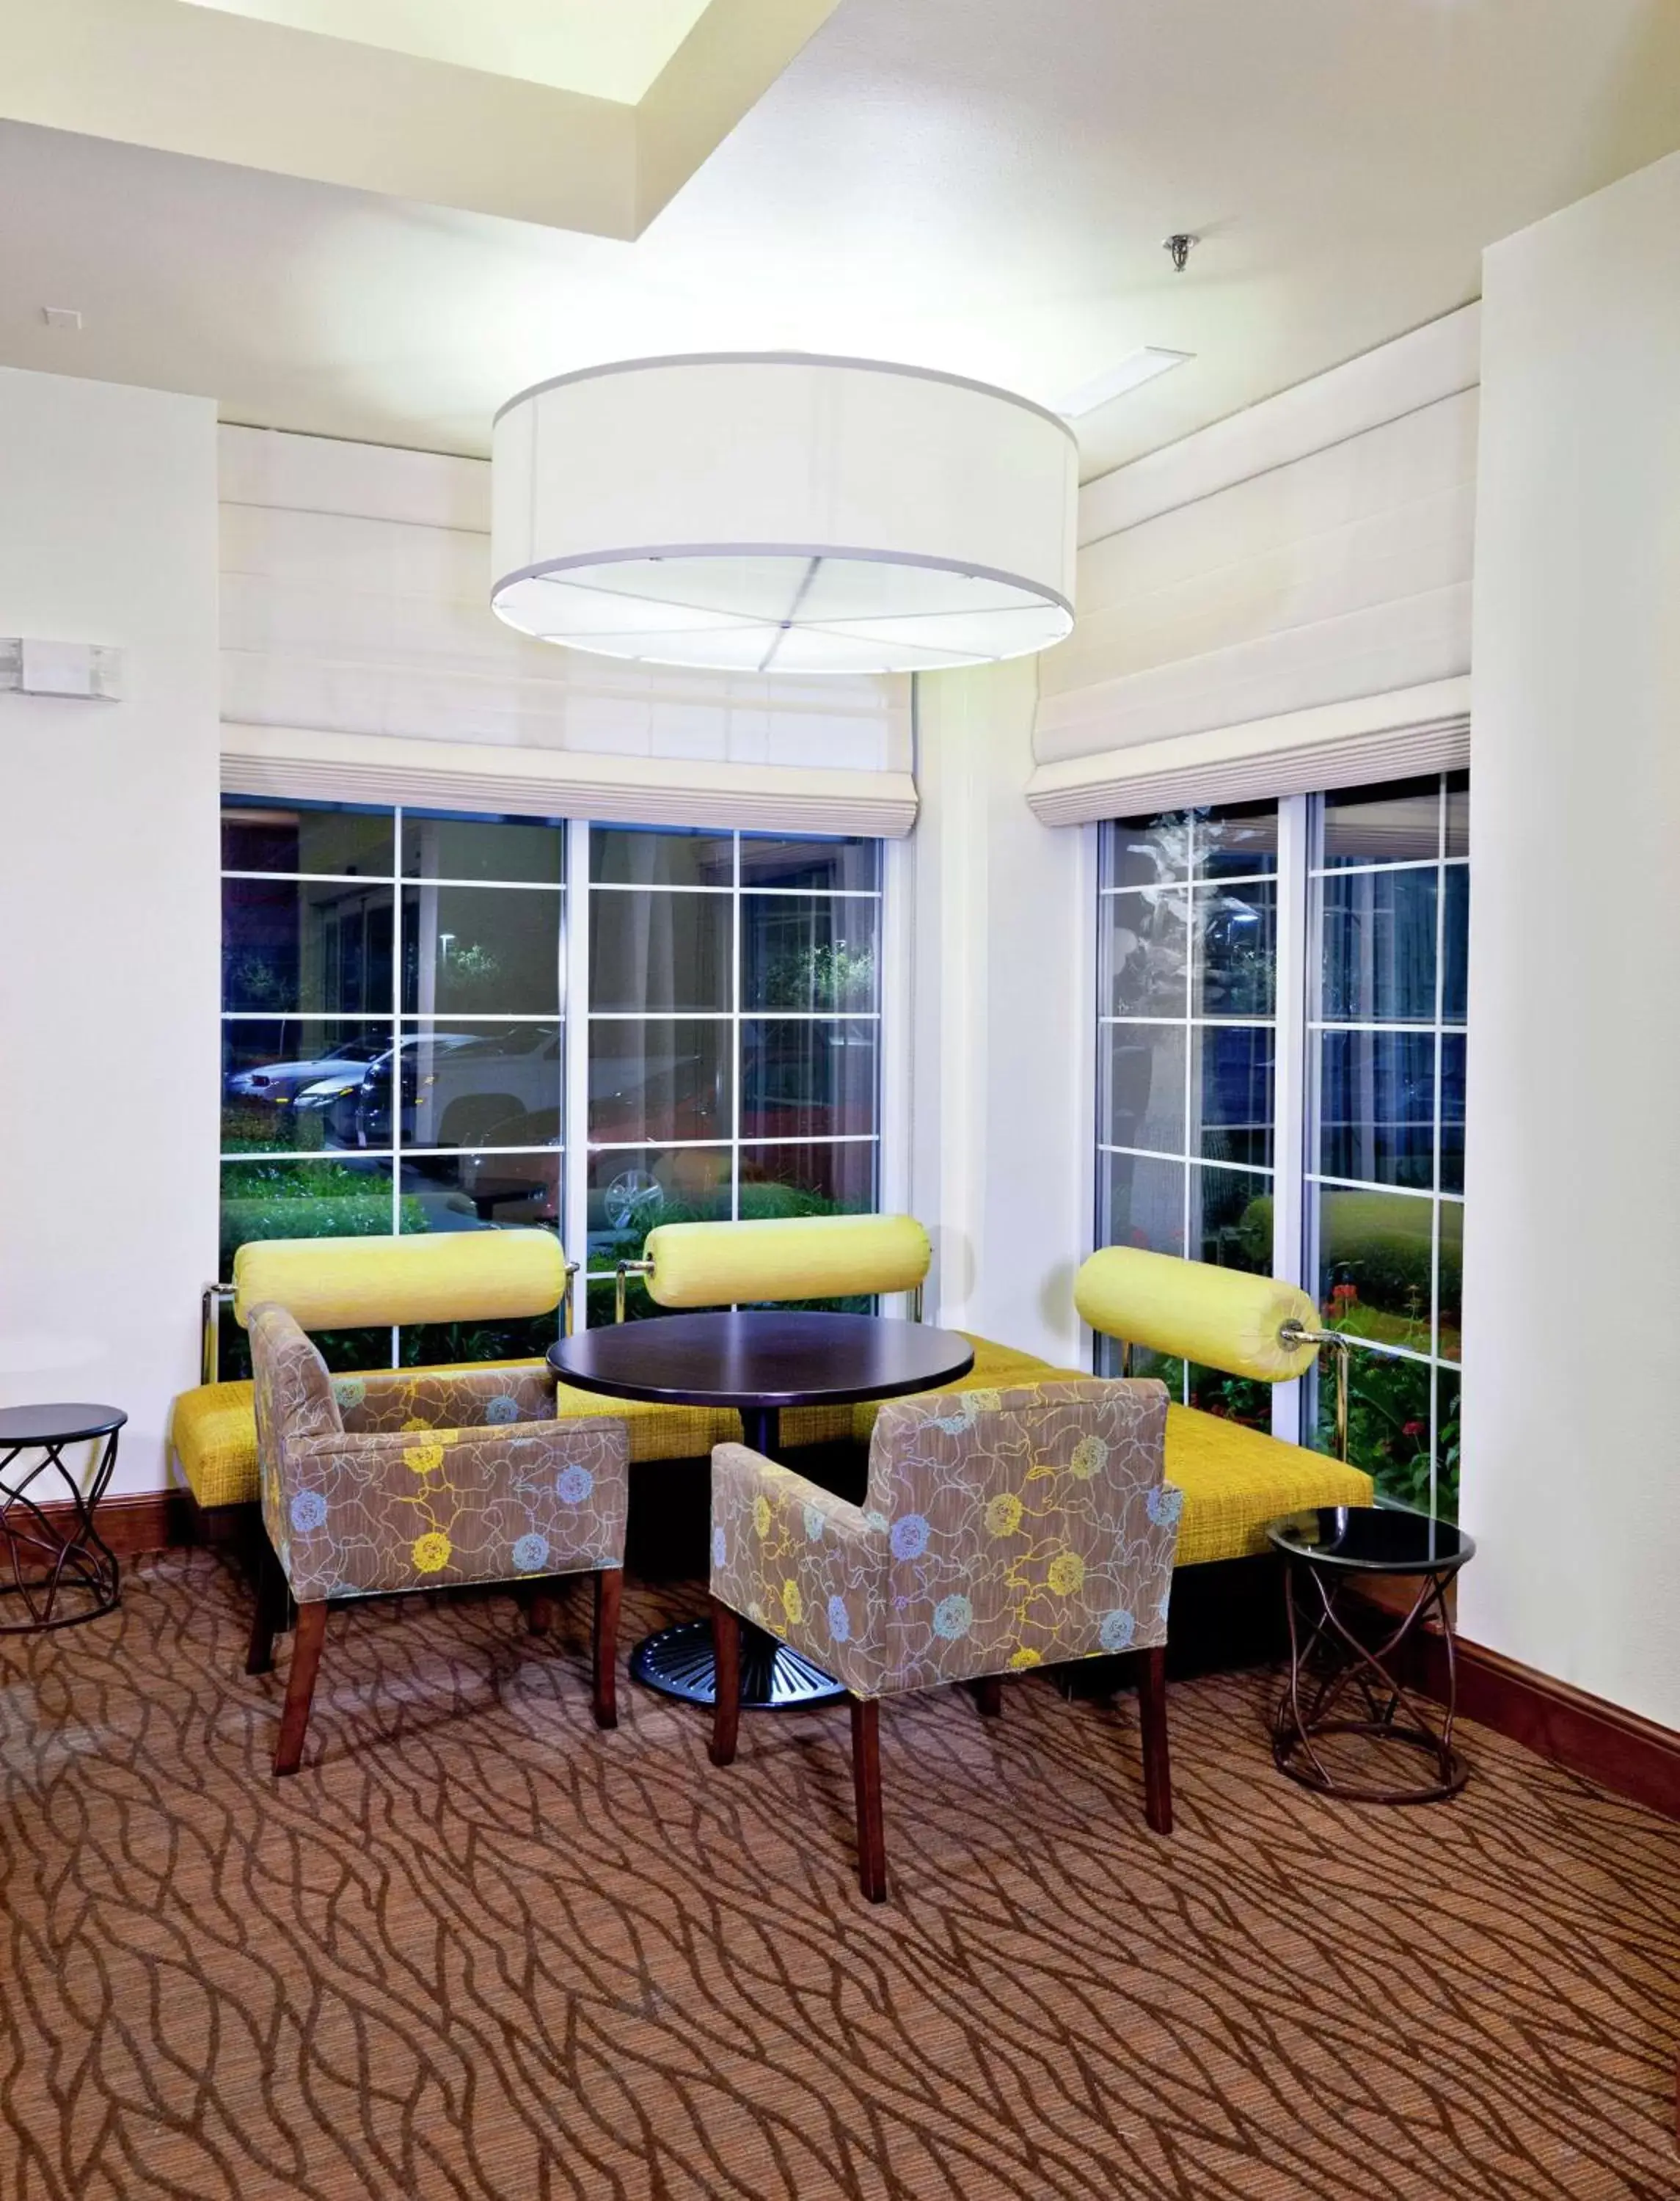 Lobby or reception, Seating Area in Hilton Garden Inn Ontario Rancho Cucamonga